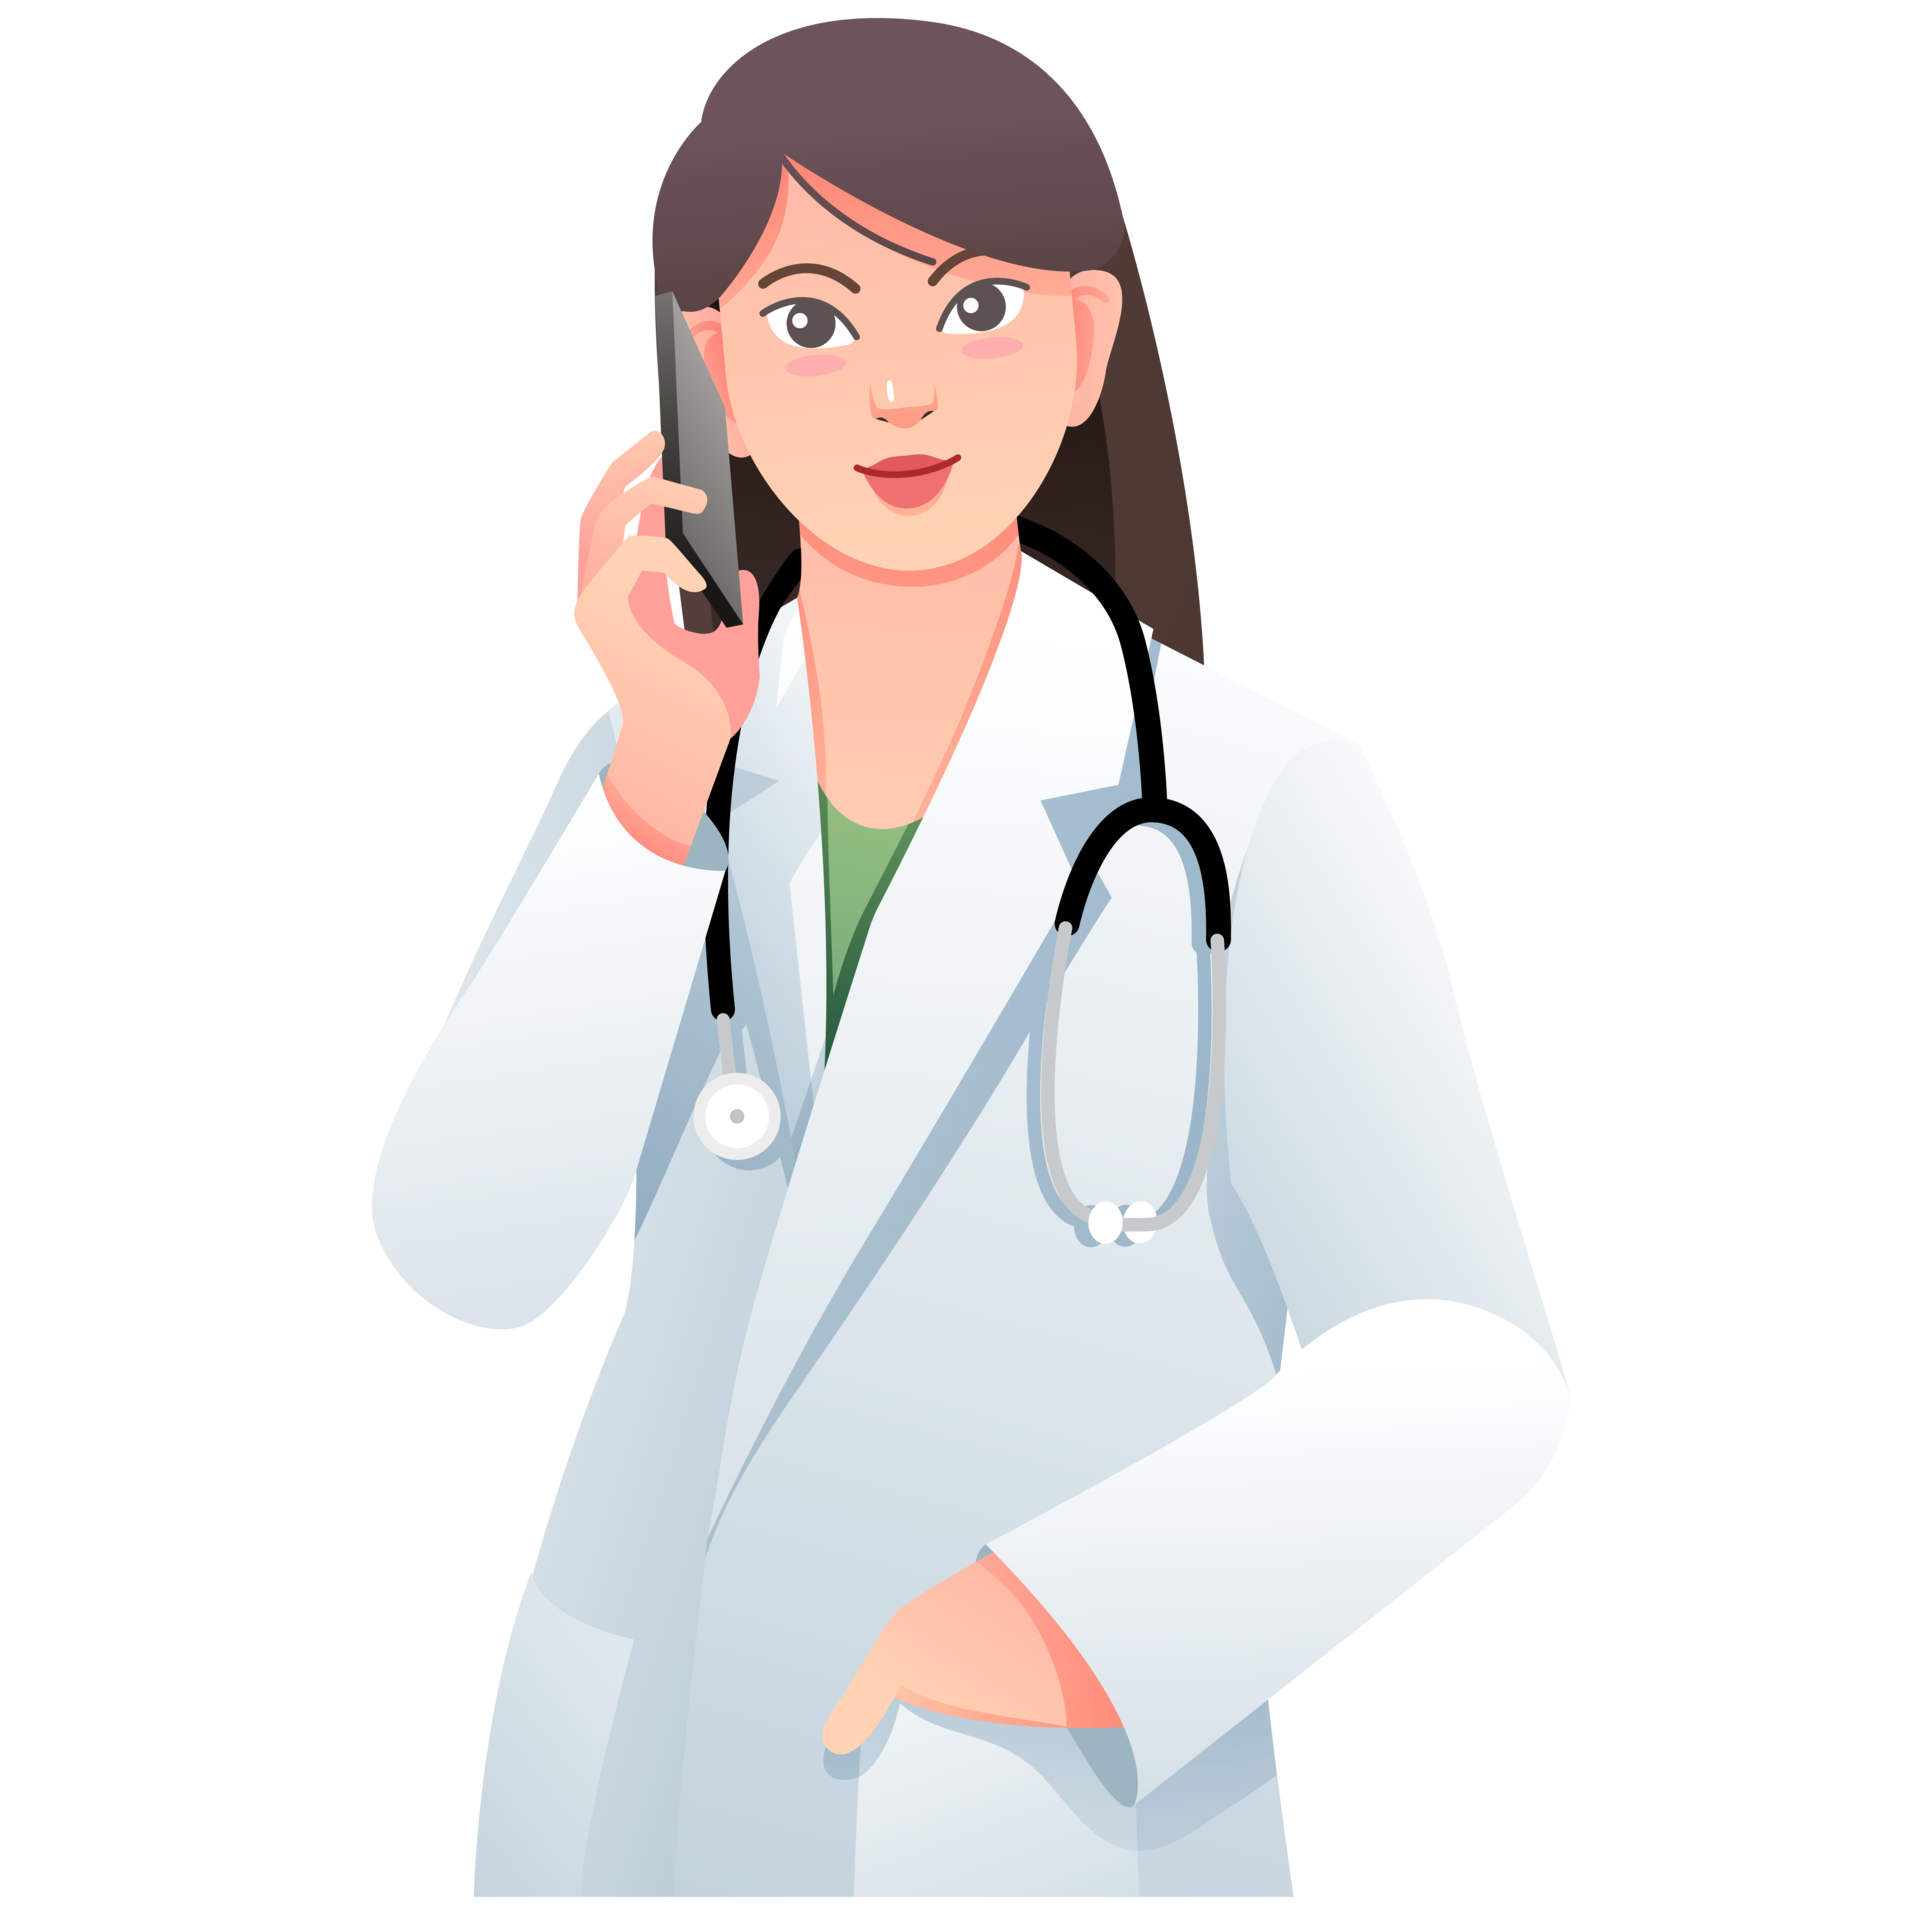 médico com estetoscópio no personagem de desenho animado do profissional  médico do hospital equipe médica 2657987 Vetor no Vecteezy